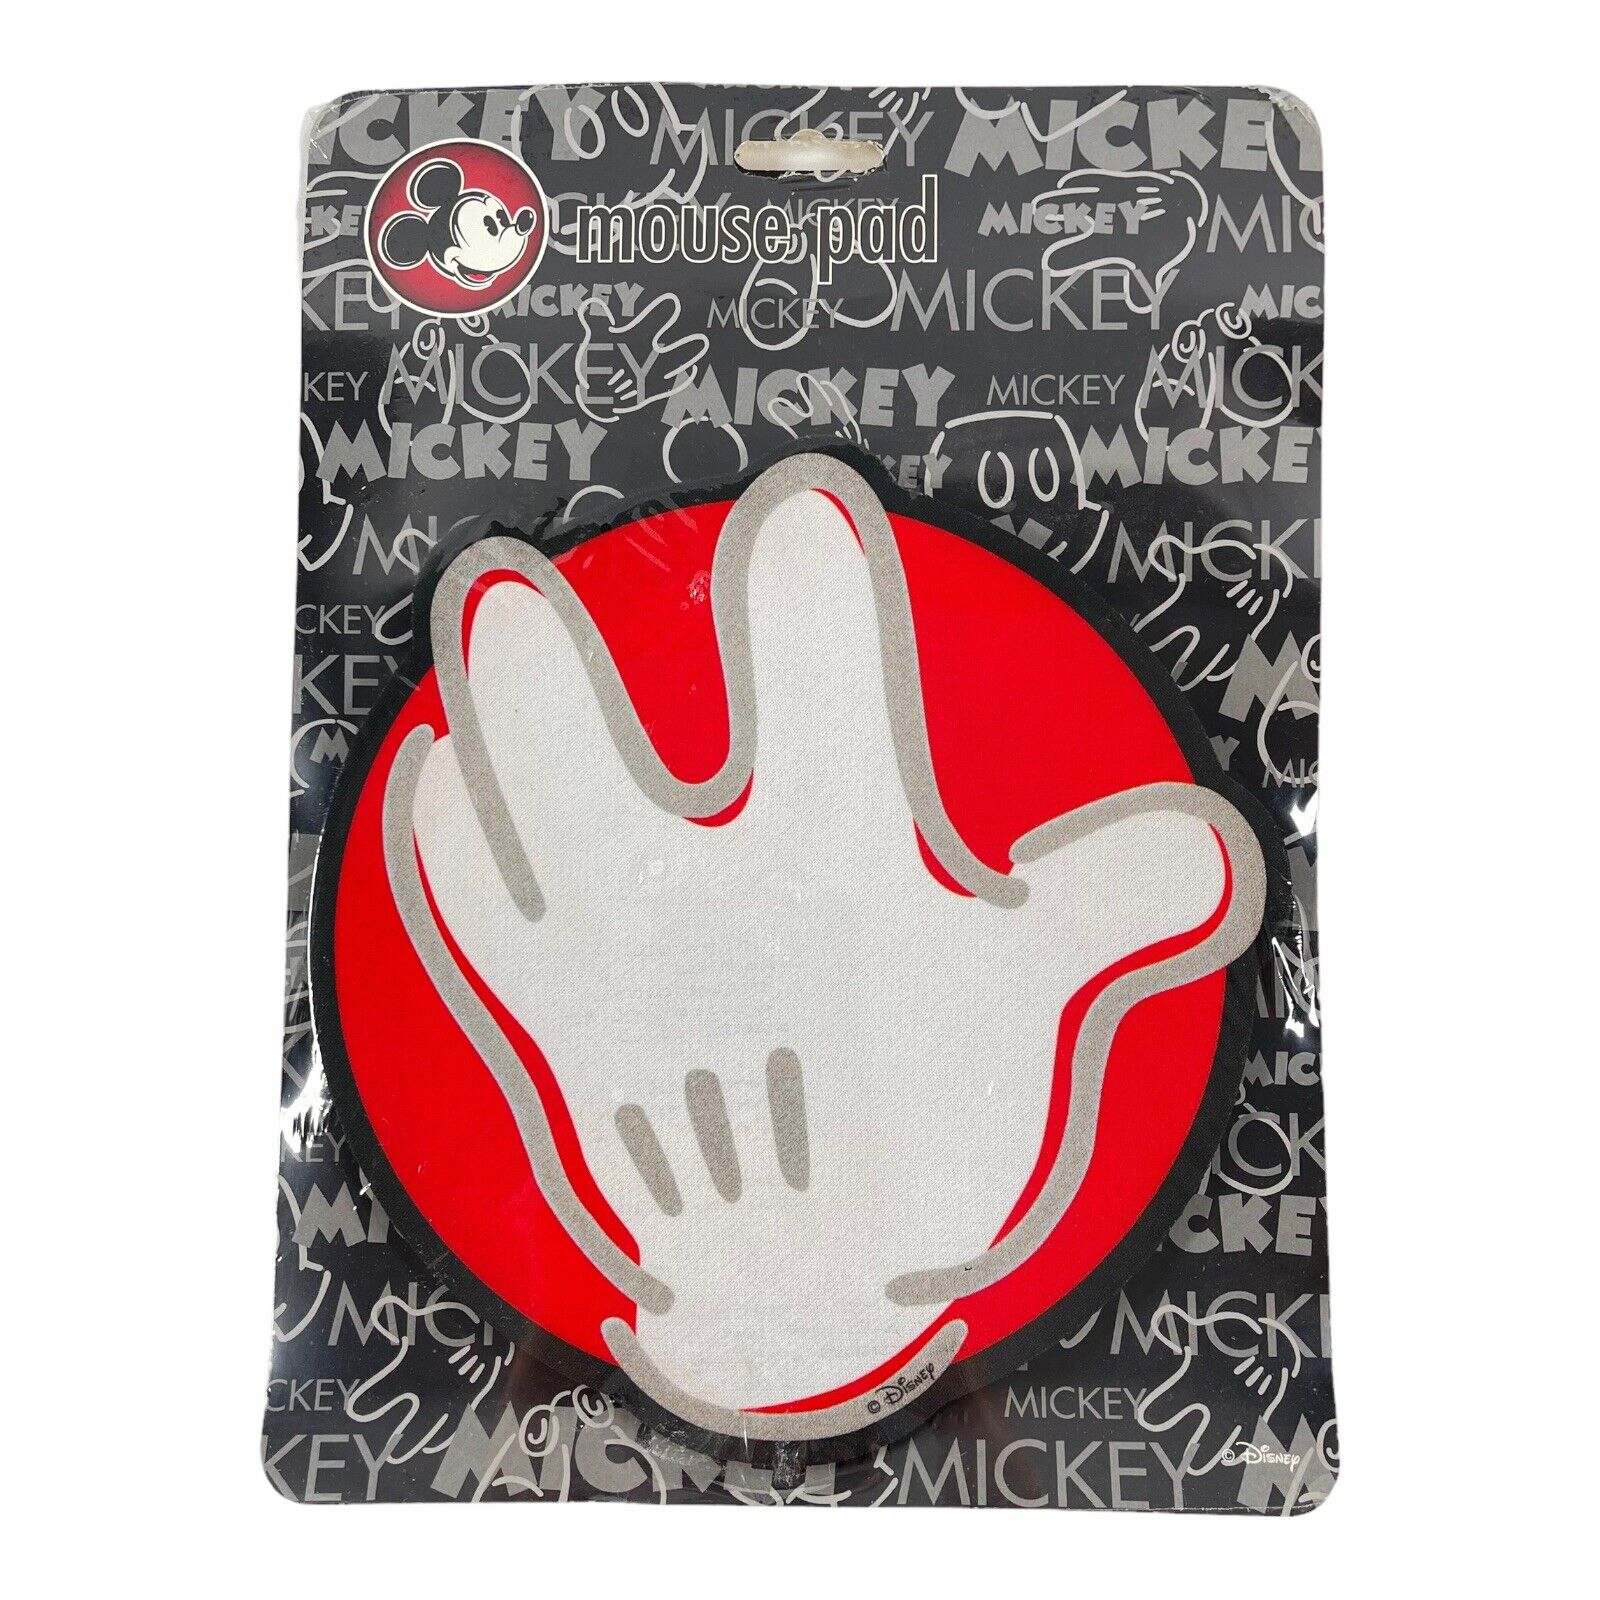 Disney Mickey Mouse Mousepad White Glove Round NOS Sealed Vintage